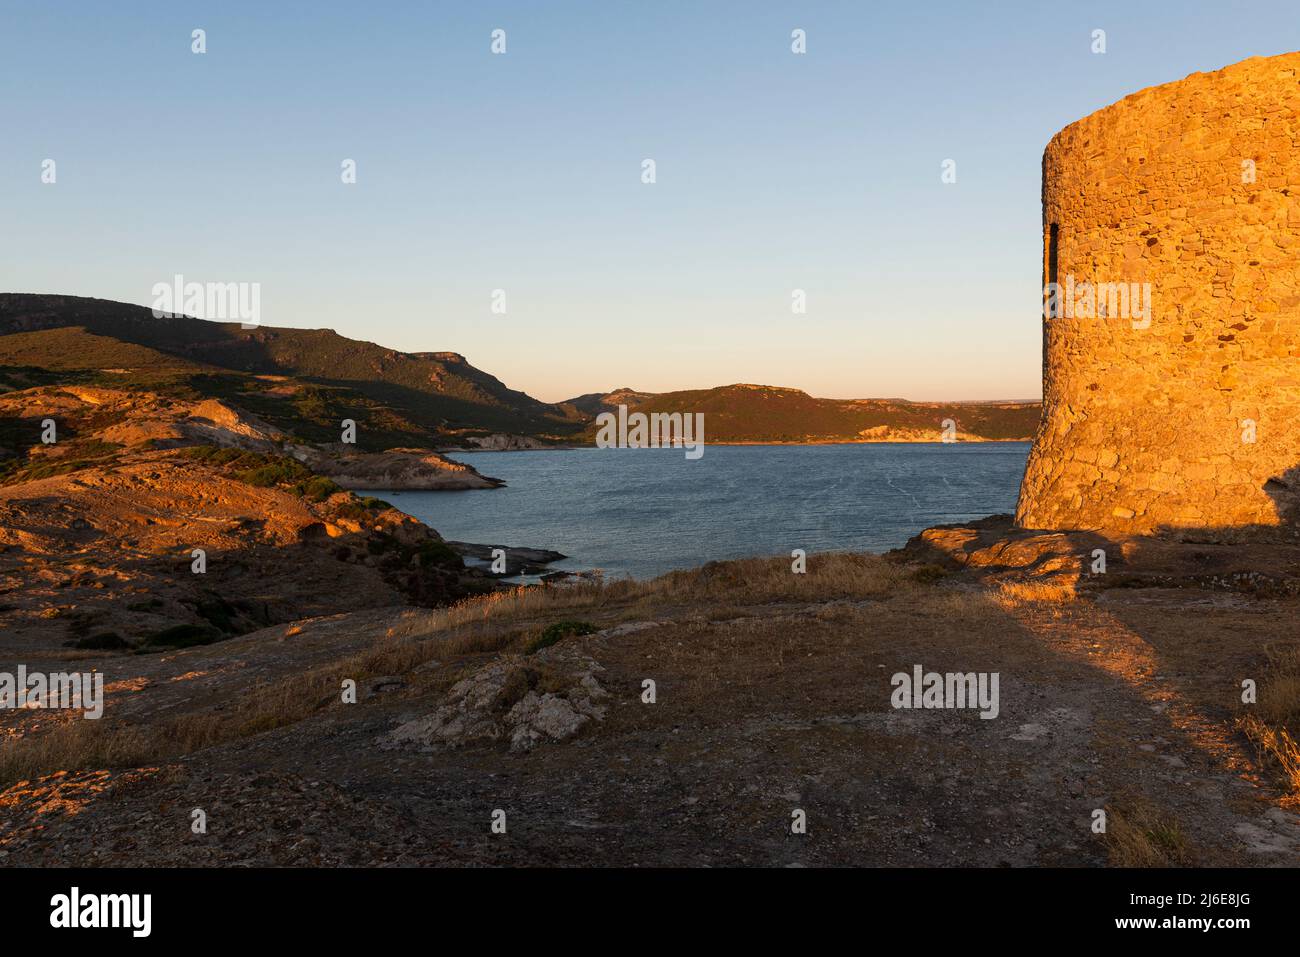 Ruinen des alten Küstenwachturms Torre Argentina auf einem Felsen oberhalb der Westküste Sardiniens bei S'Abba Druche bei Sonnenuntergang, Planargia, Italien Stockfoto